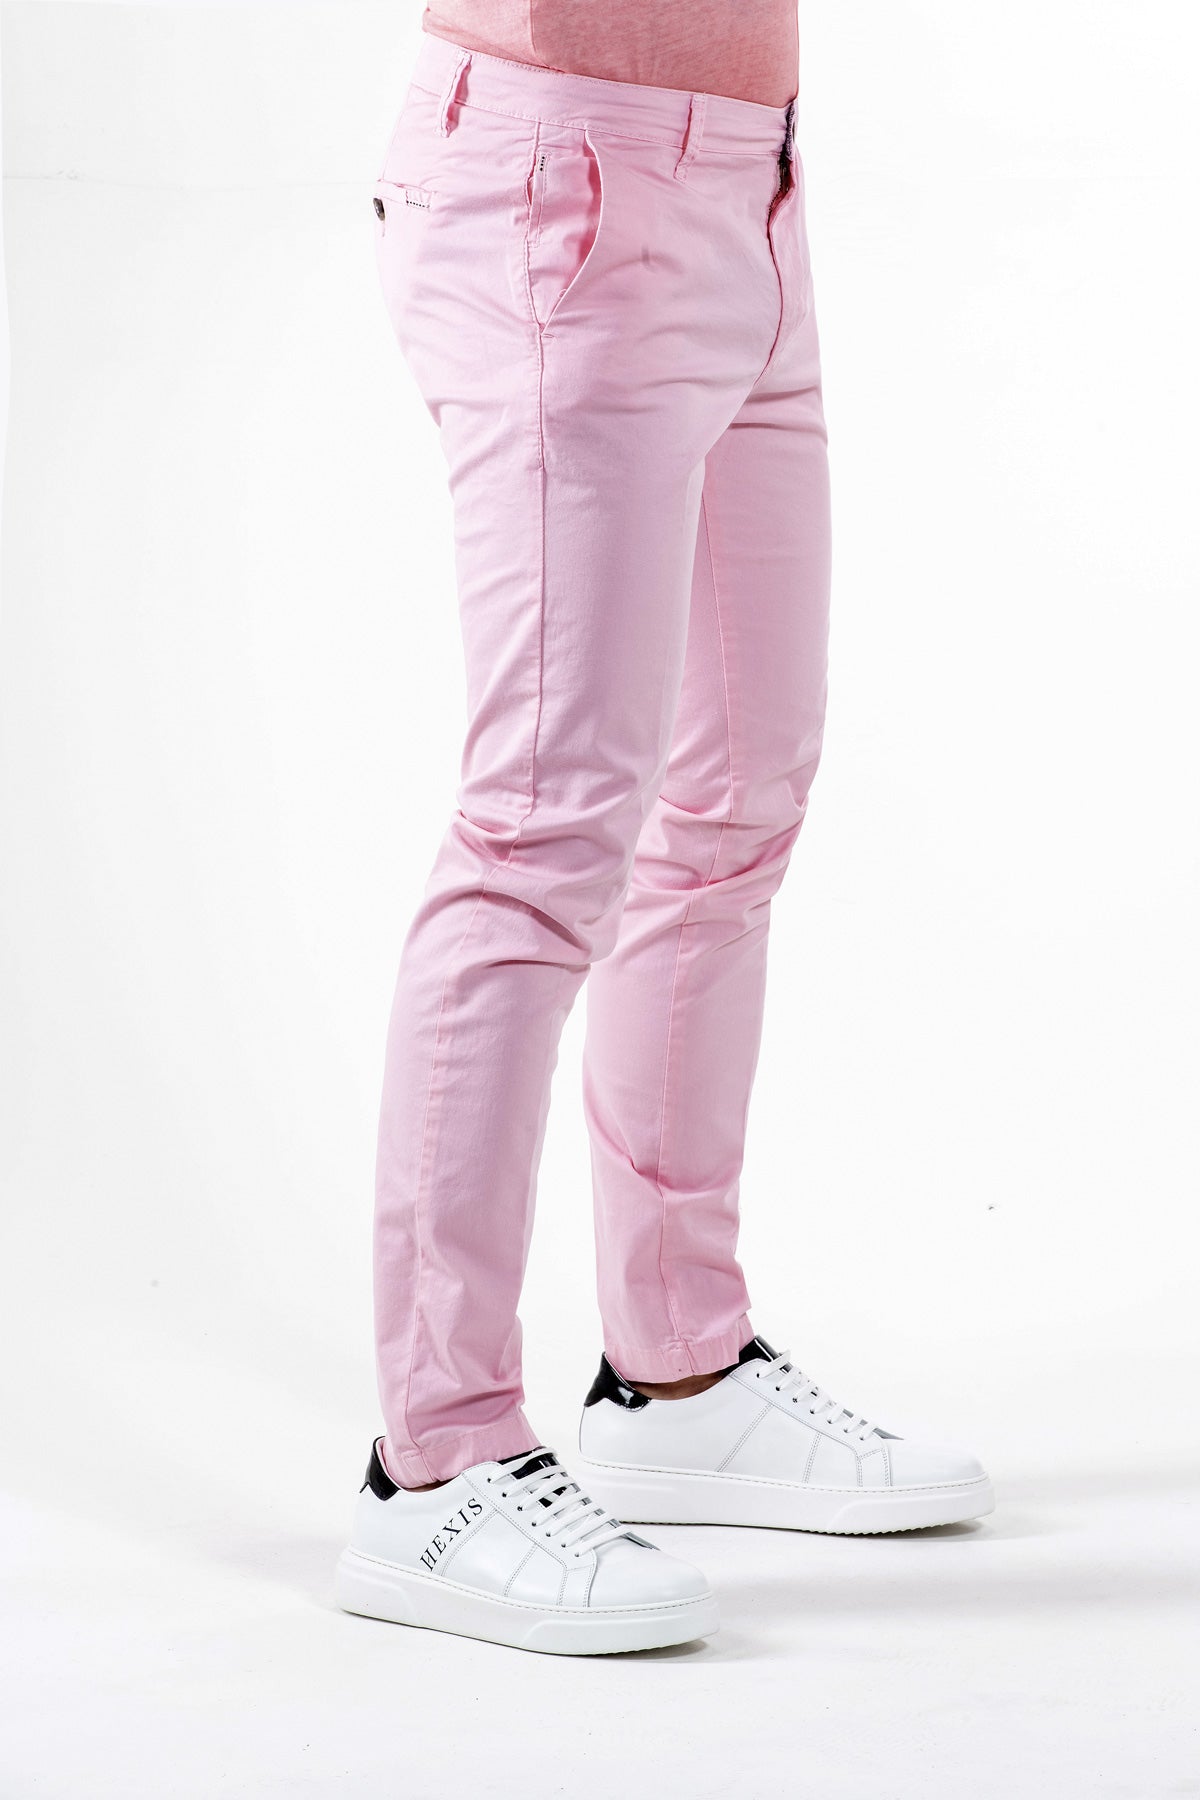 Pantalone Chino Brixton in cotone stretch Rosa